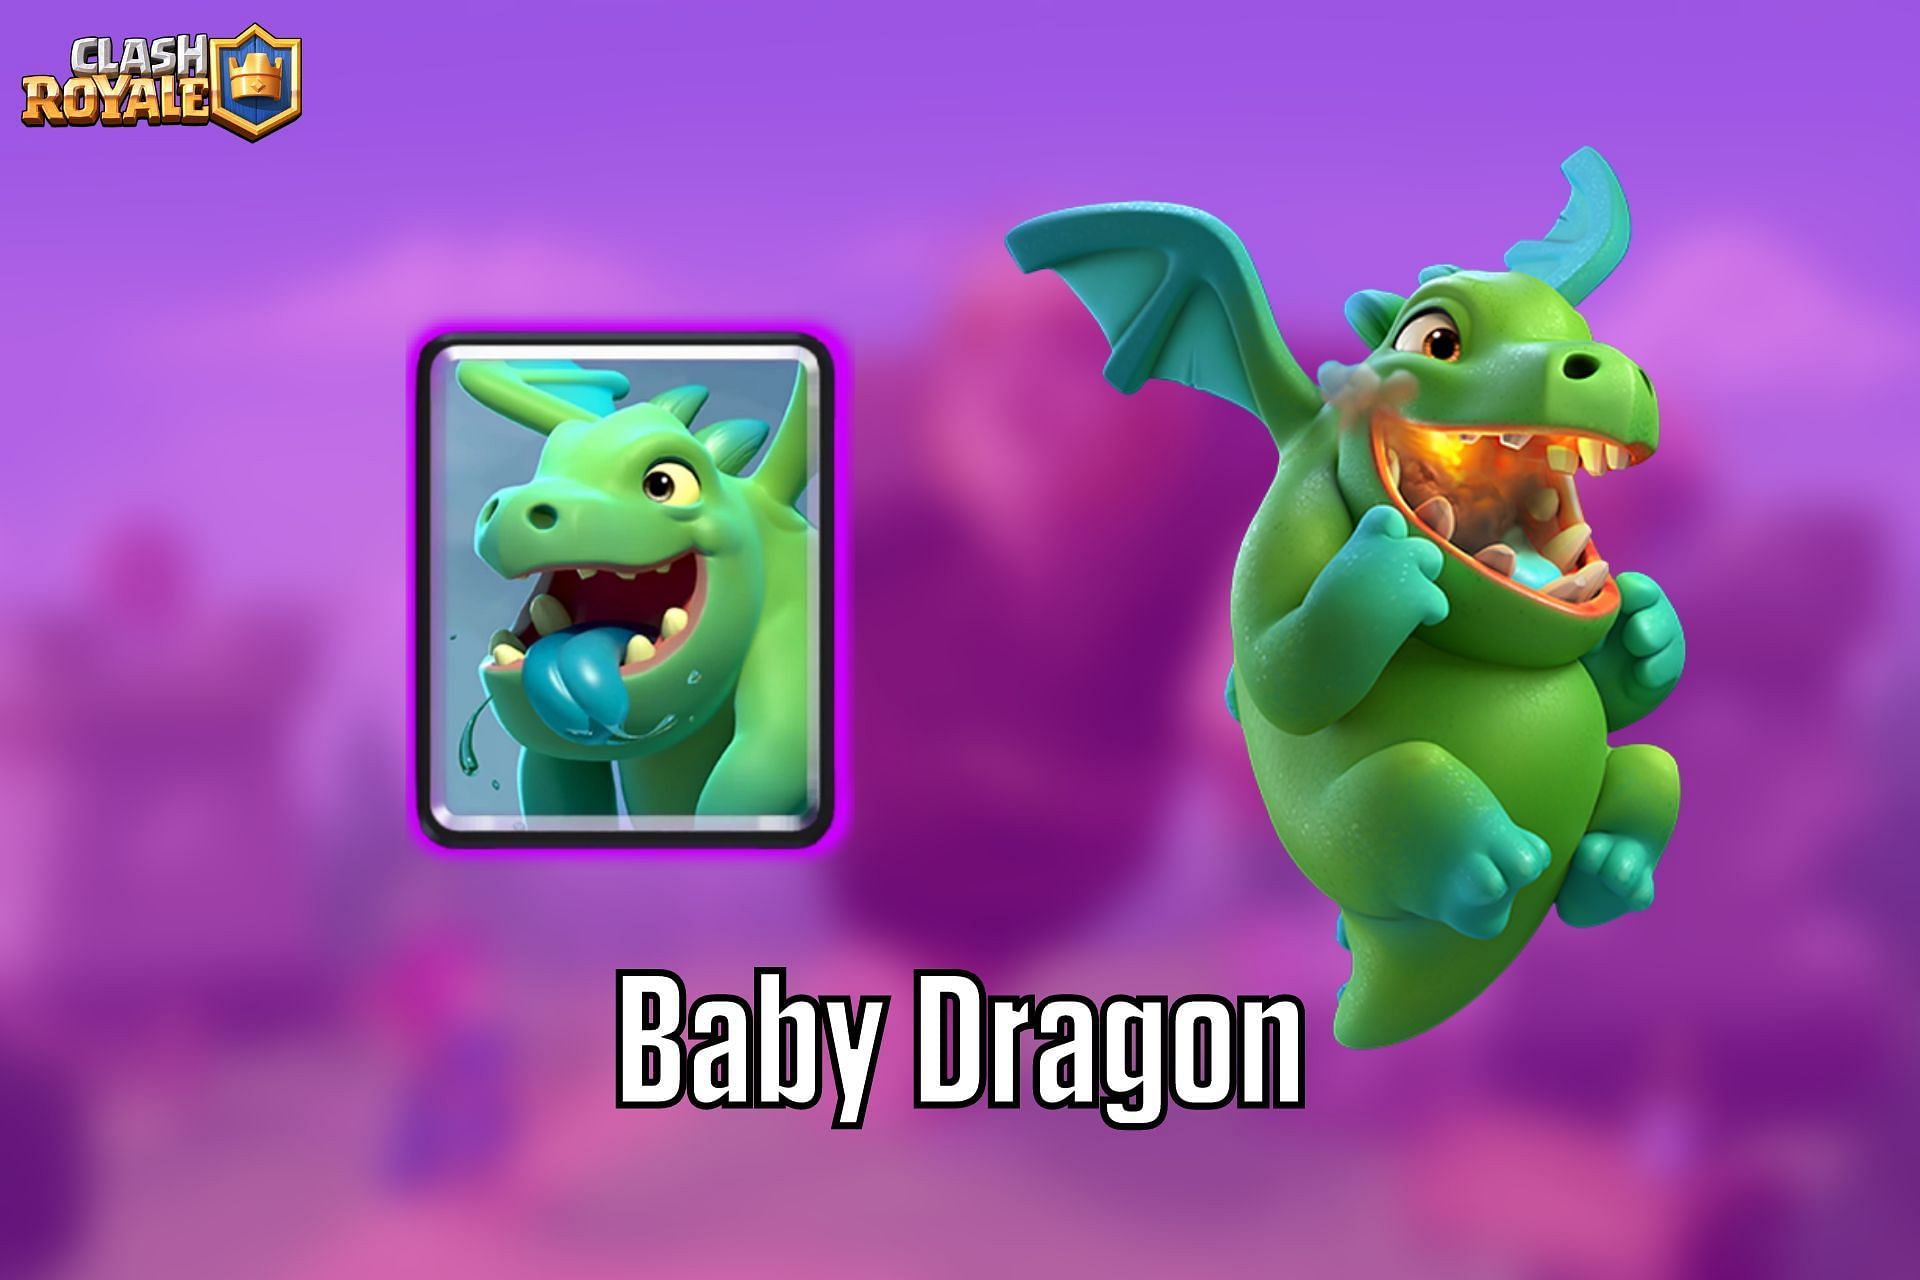 BabyDragLoon: Uma nova estratégia usando Bebê Dragão - Clash of